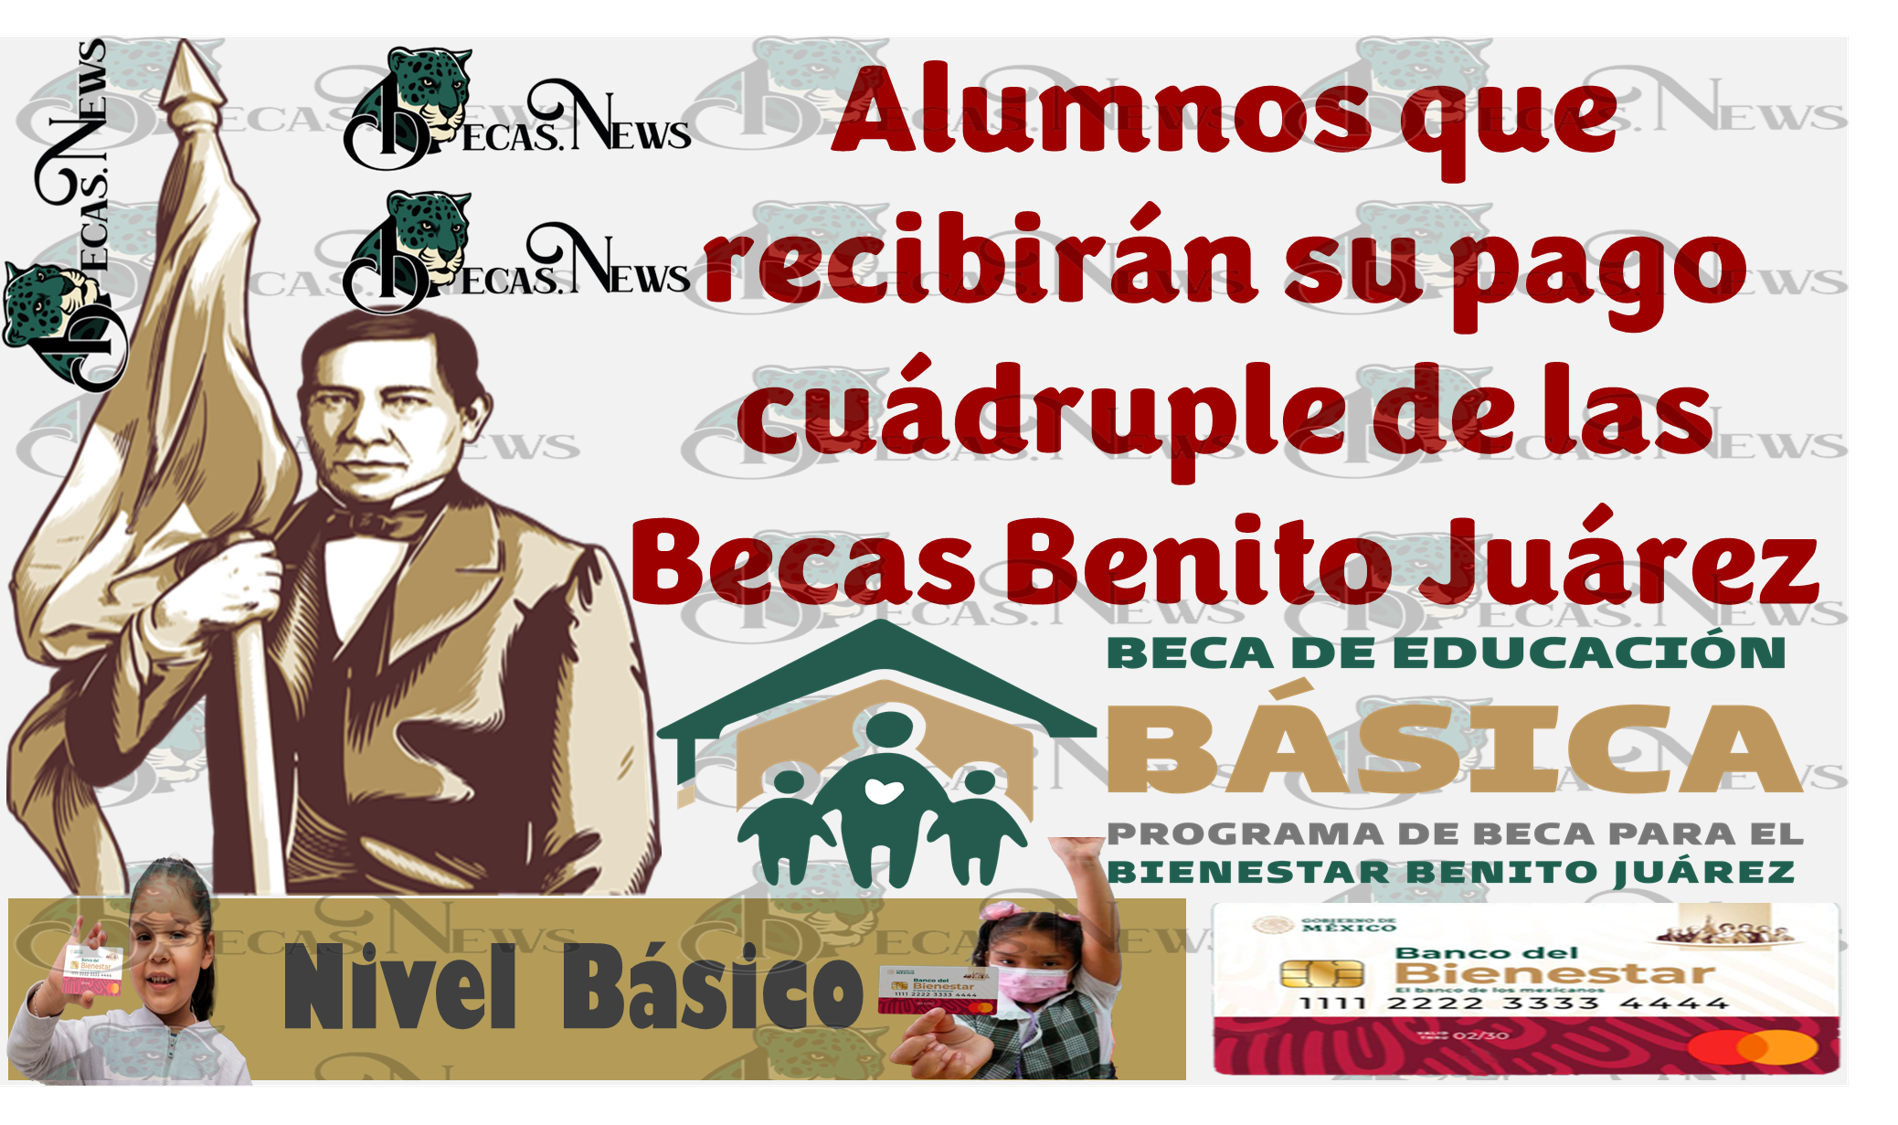 Quienes son los alumnos beneficiarios que recibirán su pago cuádruple de las Becas Benito Juárez (educación básica) este mes octubre del año 2023